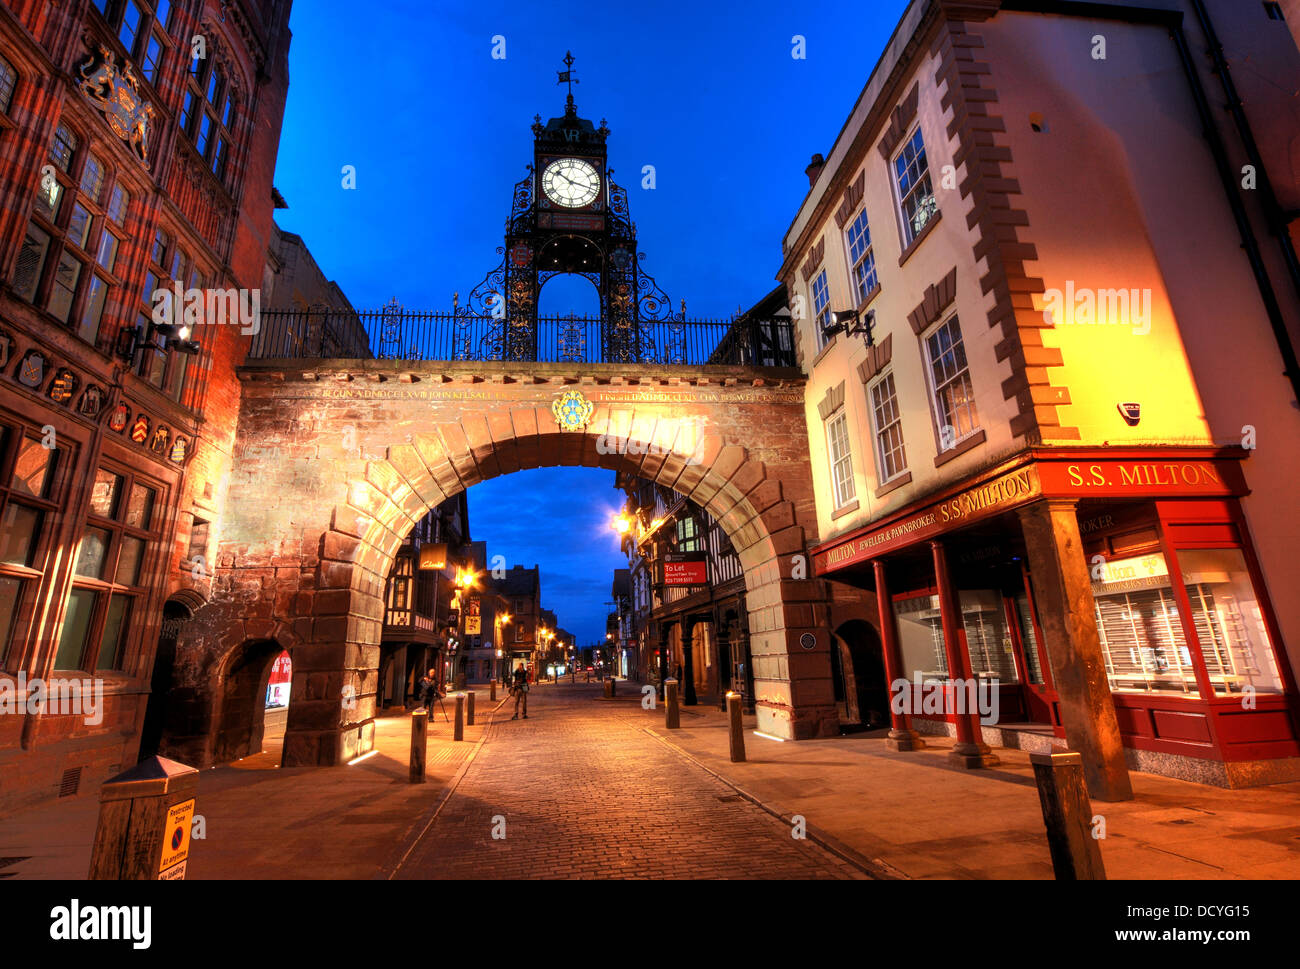 Dans la ville de Chester, SW ENGLAND UK prises au crépuscule Banque D'Images